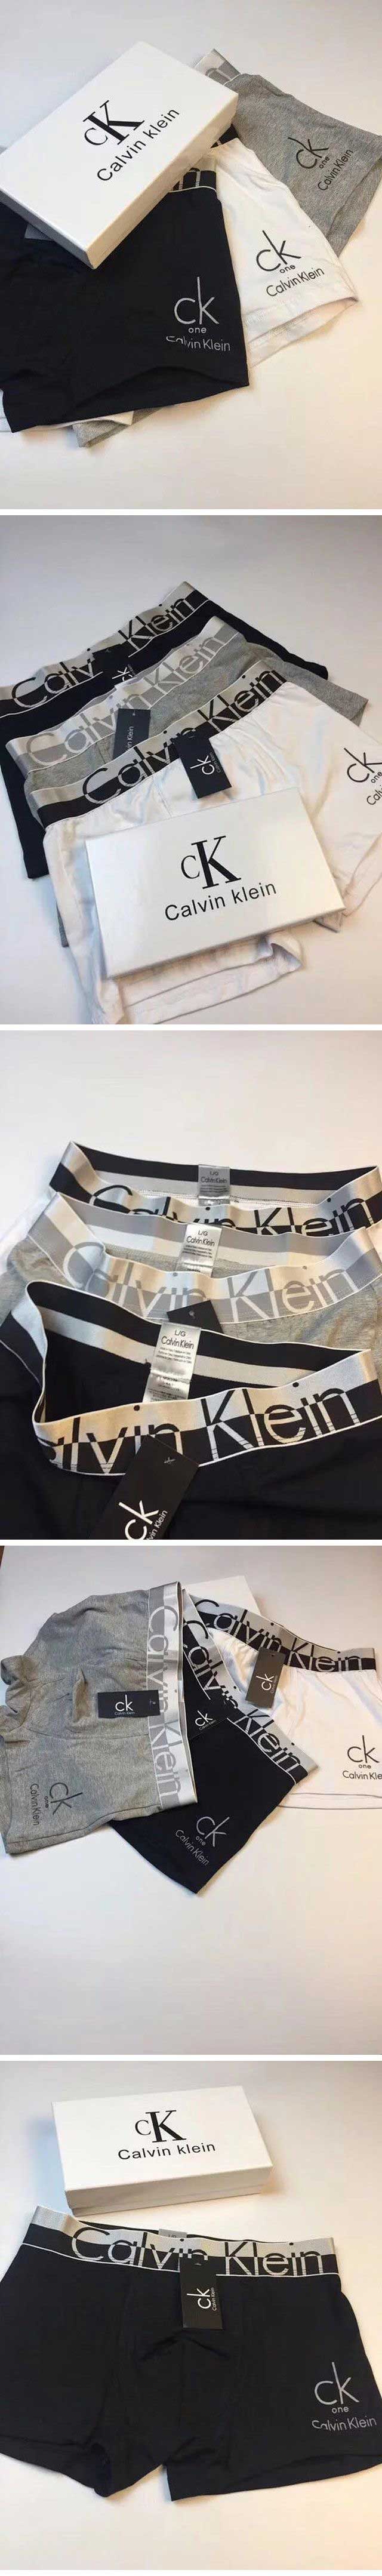 Calvin Klein Ice Skin カルバンクライン アイススキン アンダーウェア